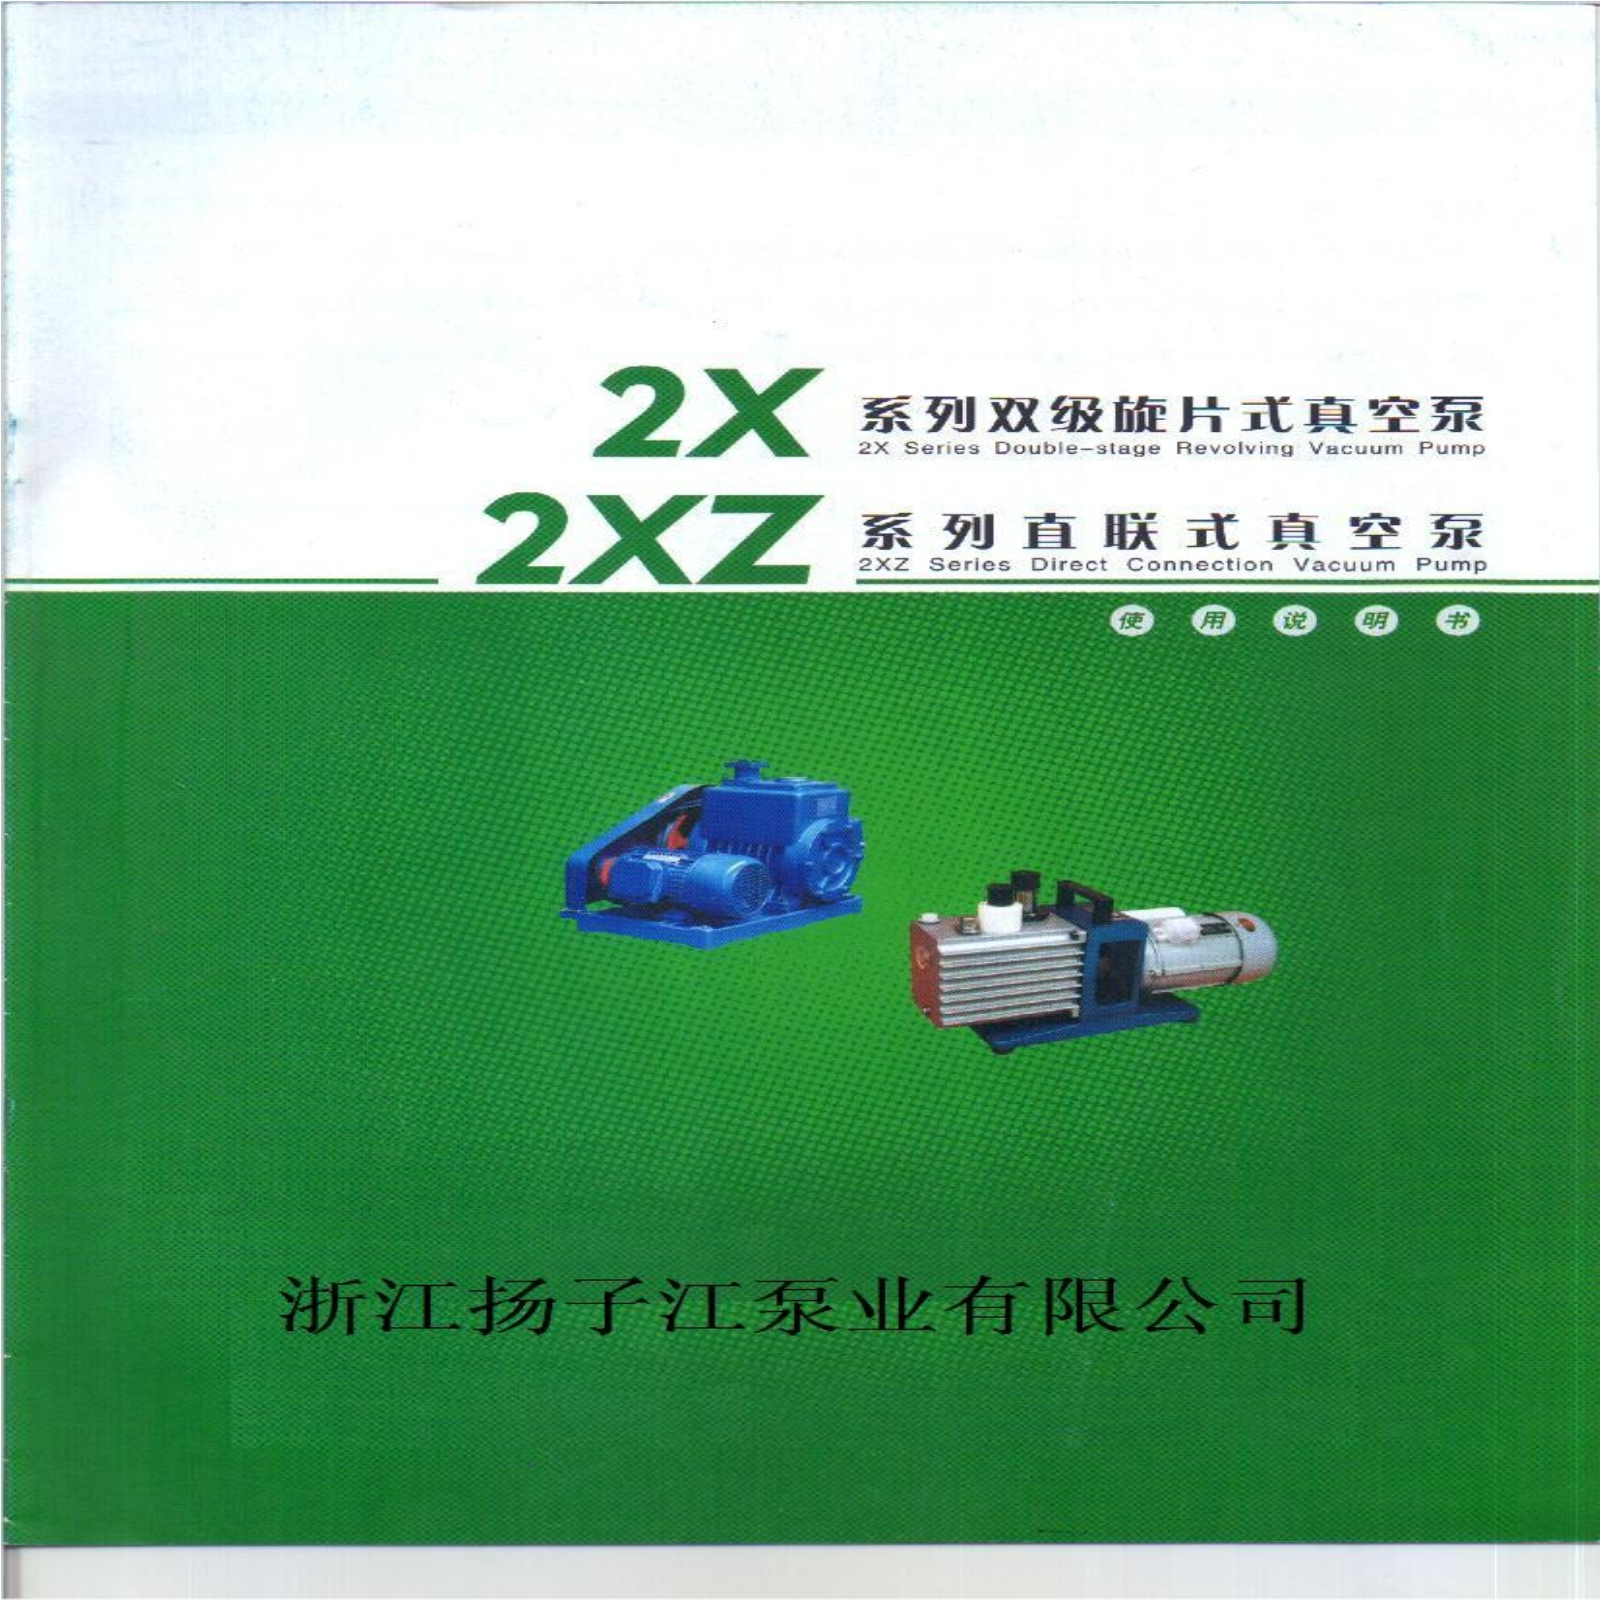 扬子江 2XZ型旋片式真空泵手册